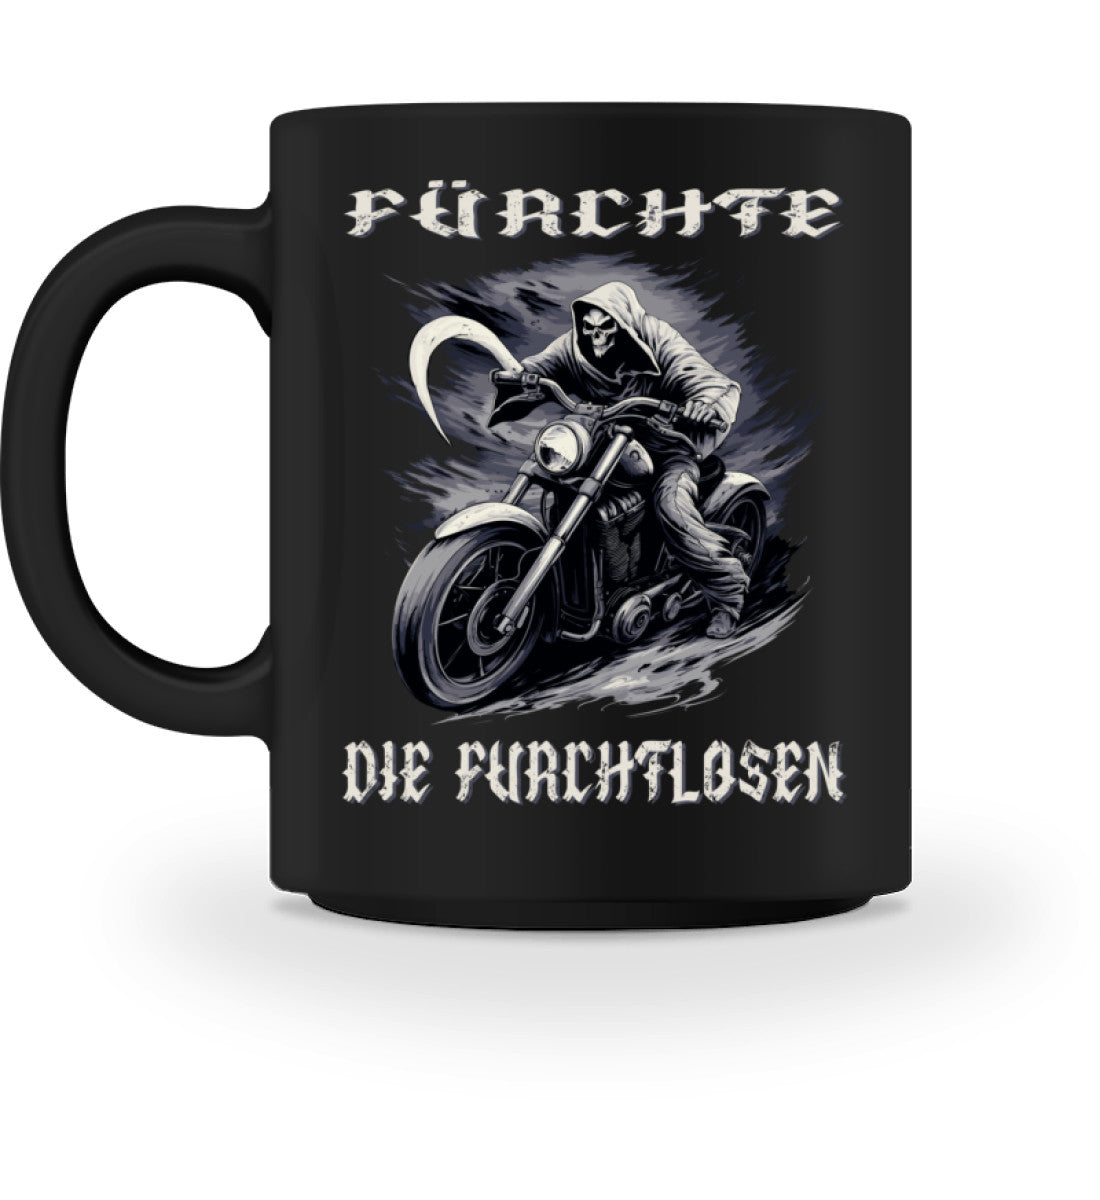 Eine Tasse für Motorradfahrer von Wingbikers, mit dem beidseitigen Aufdruck, Fürchte die Furchtlosen, in schwarz.